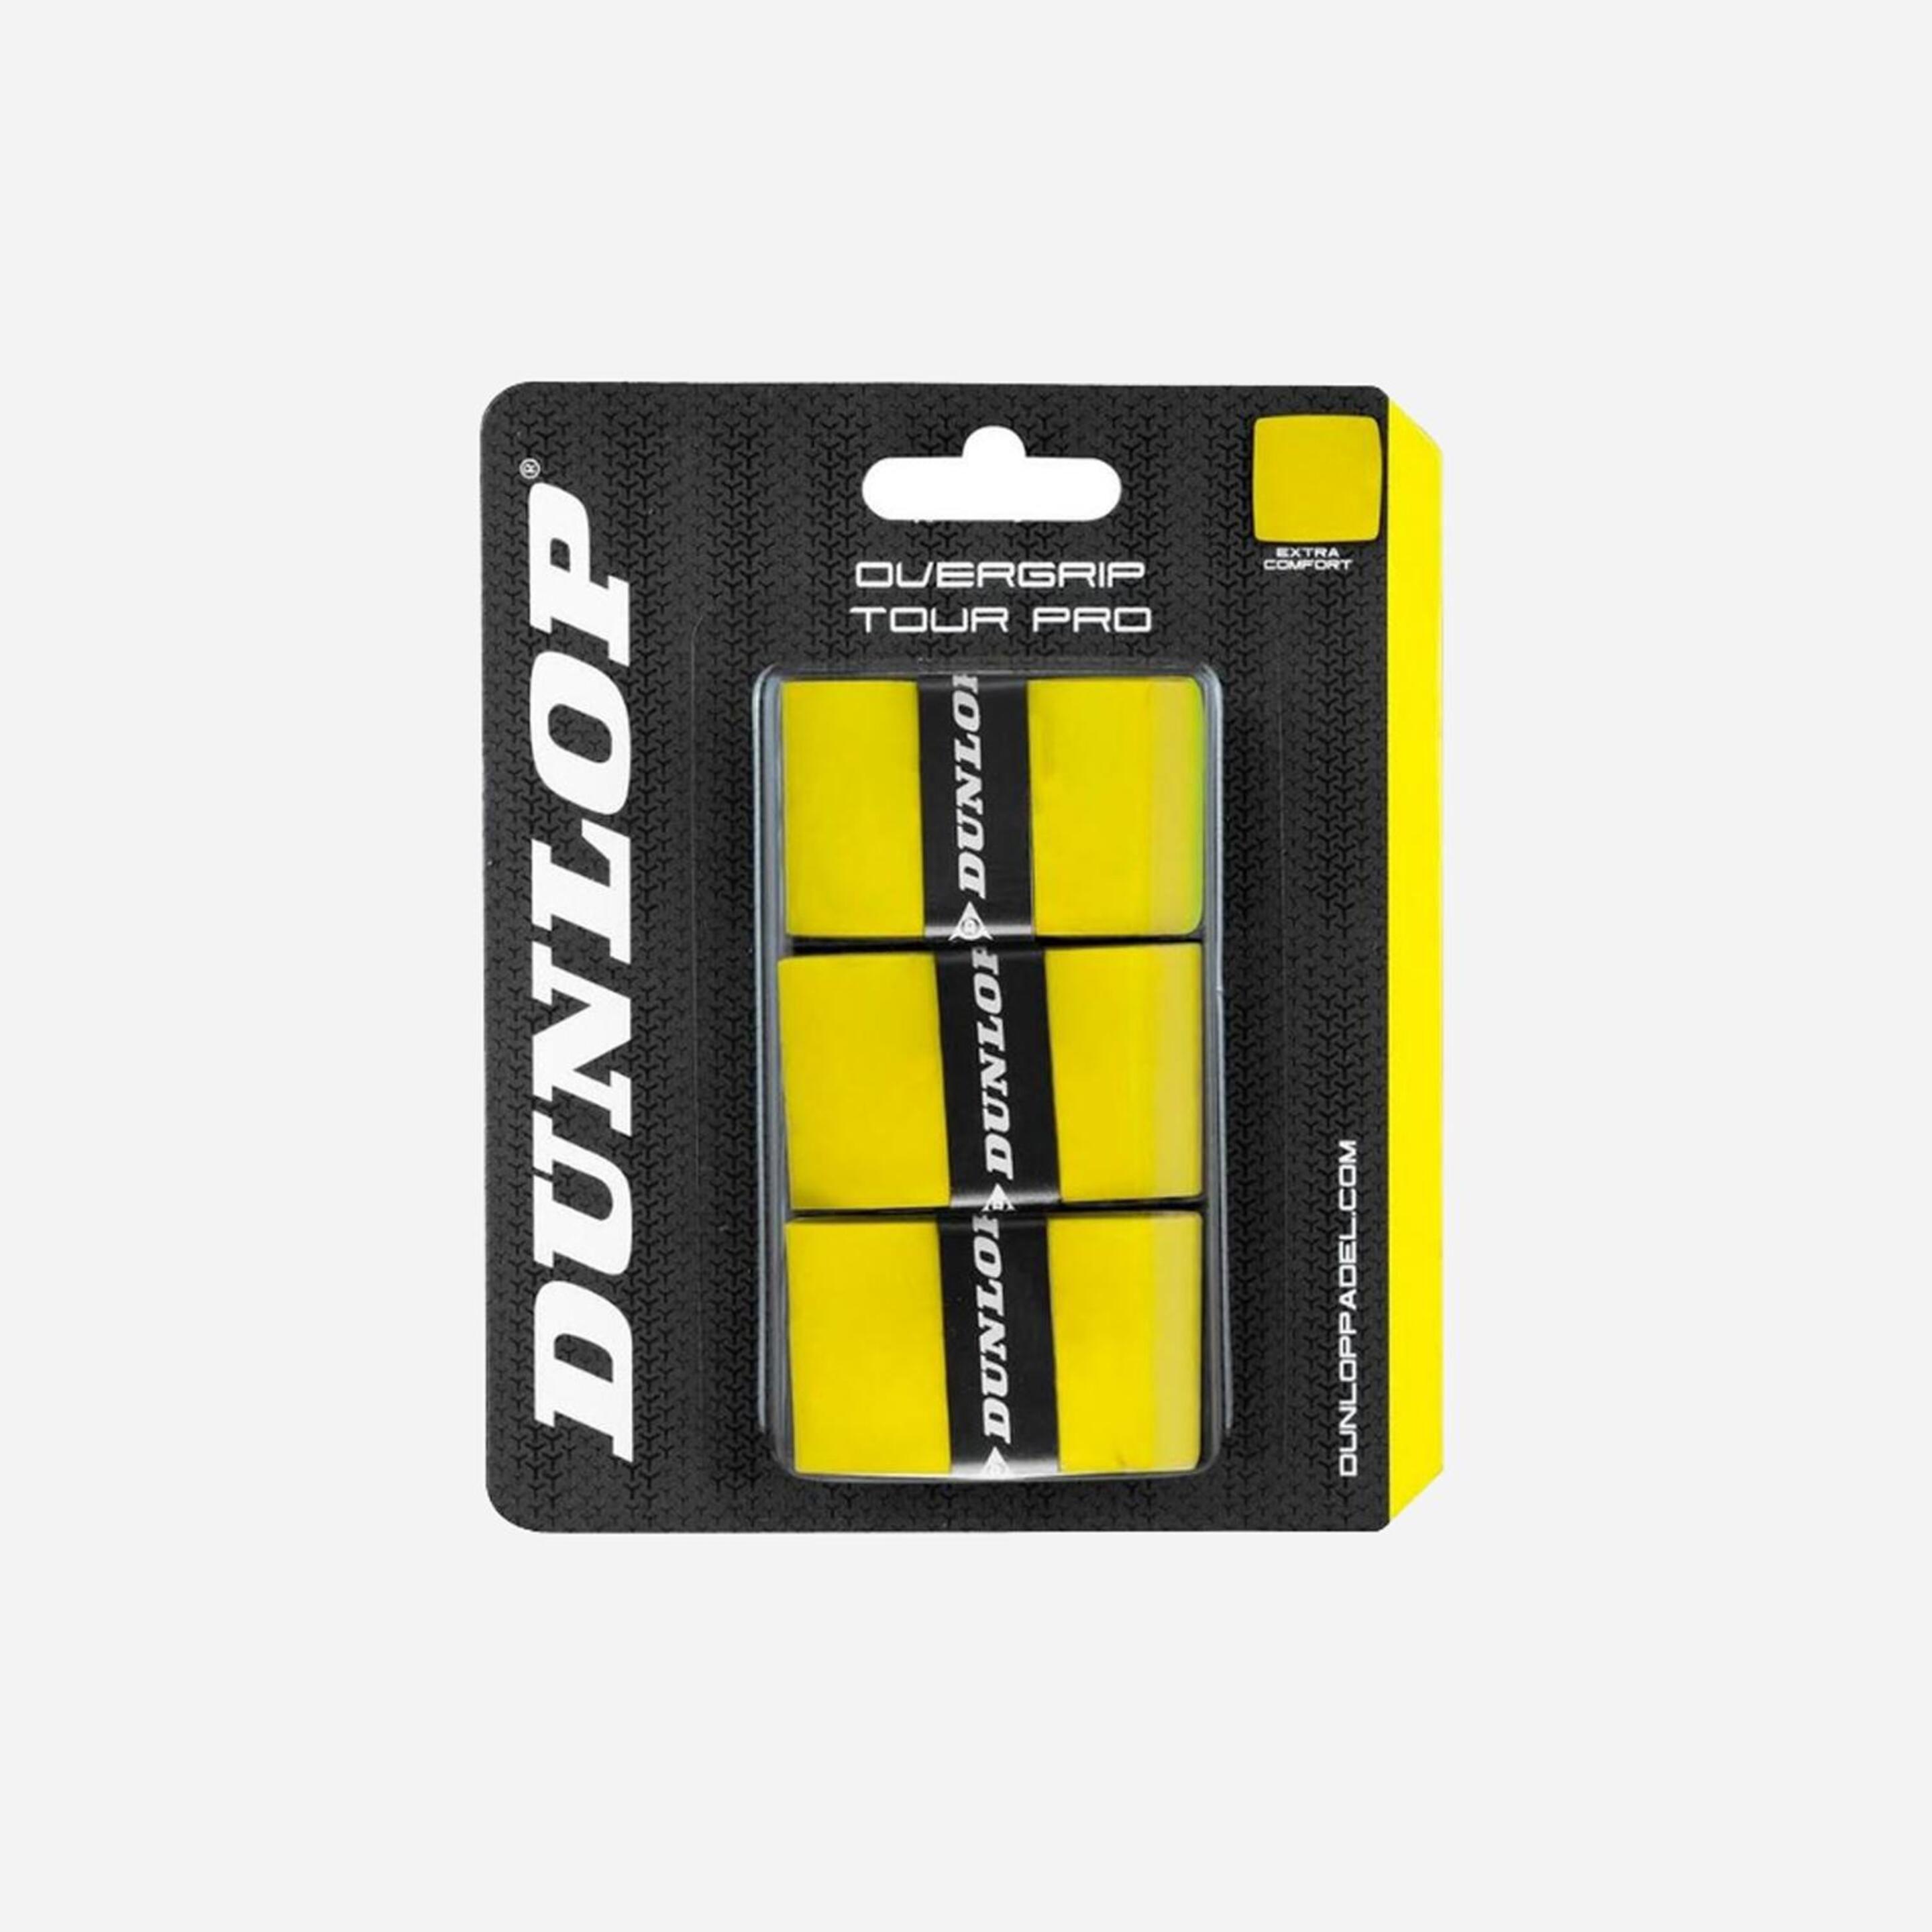 Dunlop Tour Pro - amarillo - Overgrip Pádel